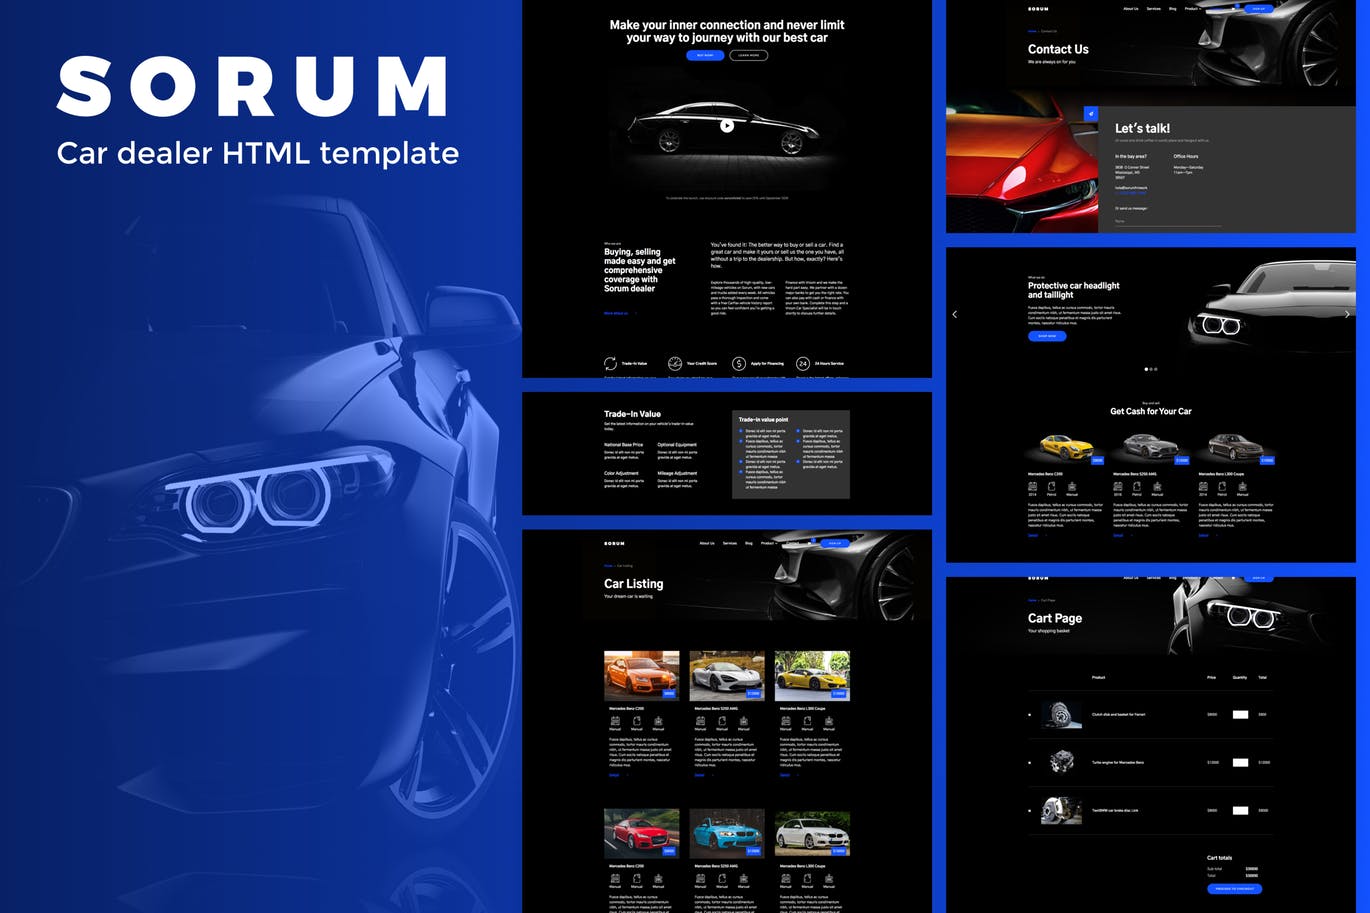 汽车4S经销商/汽车品牌官网HTML模板素材库精选 Sorum – Car Dealer HTML Template插图